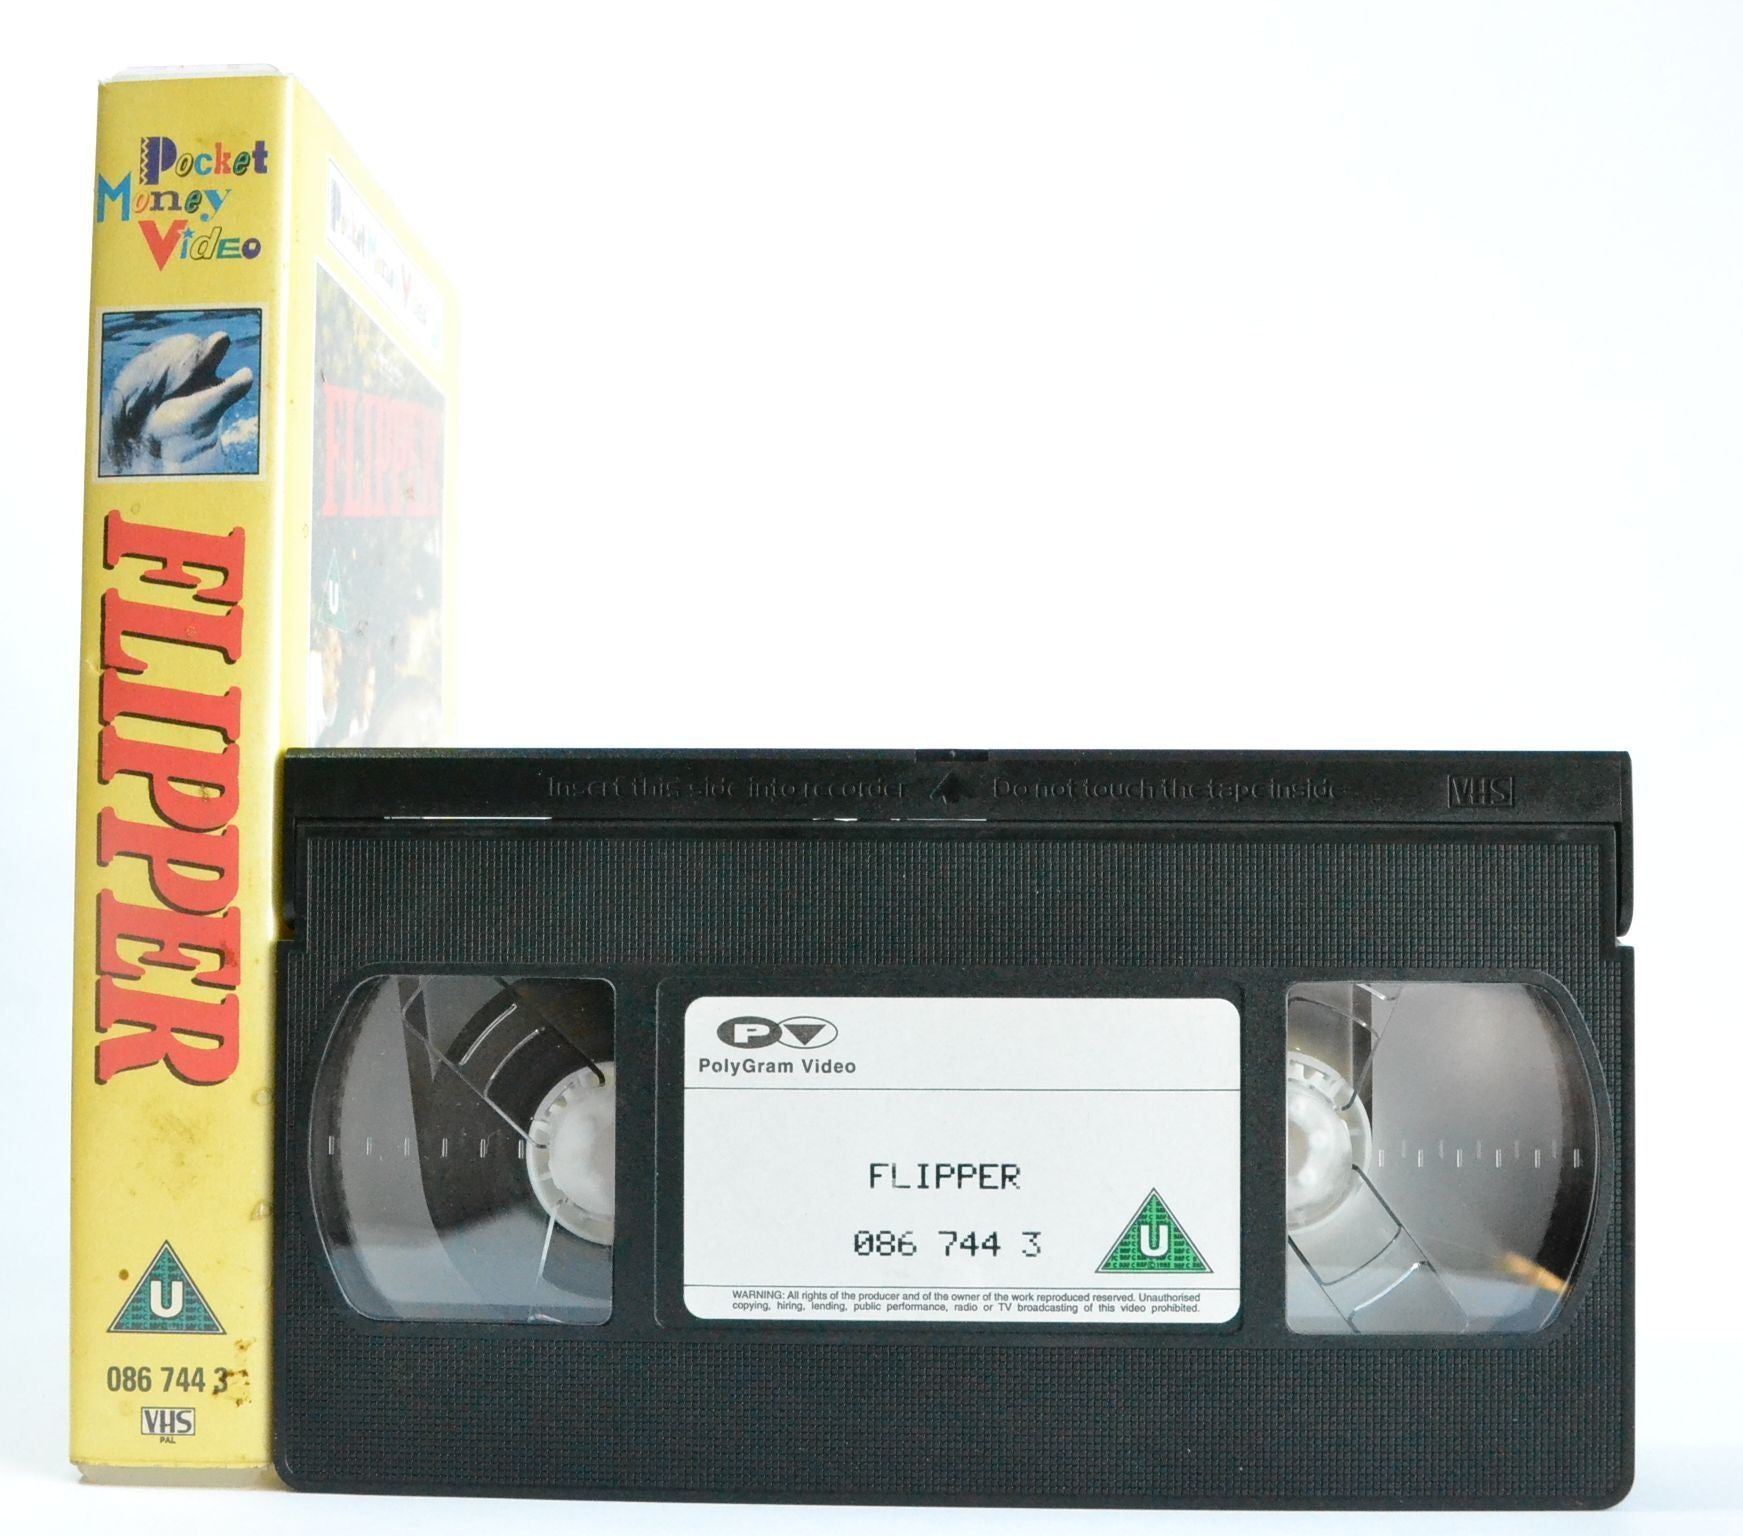 Flipper: Hour Of Peril - Shark Hunt - The Spy - Children’s Favourite (1964) - VHS-